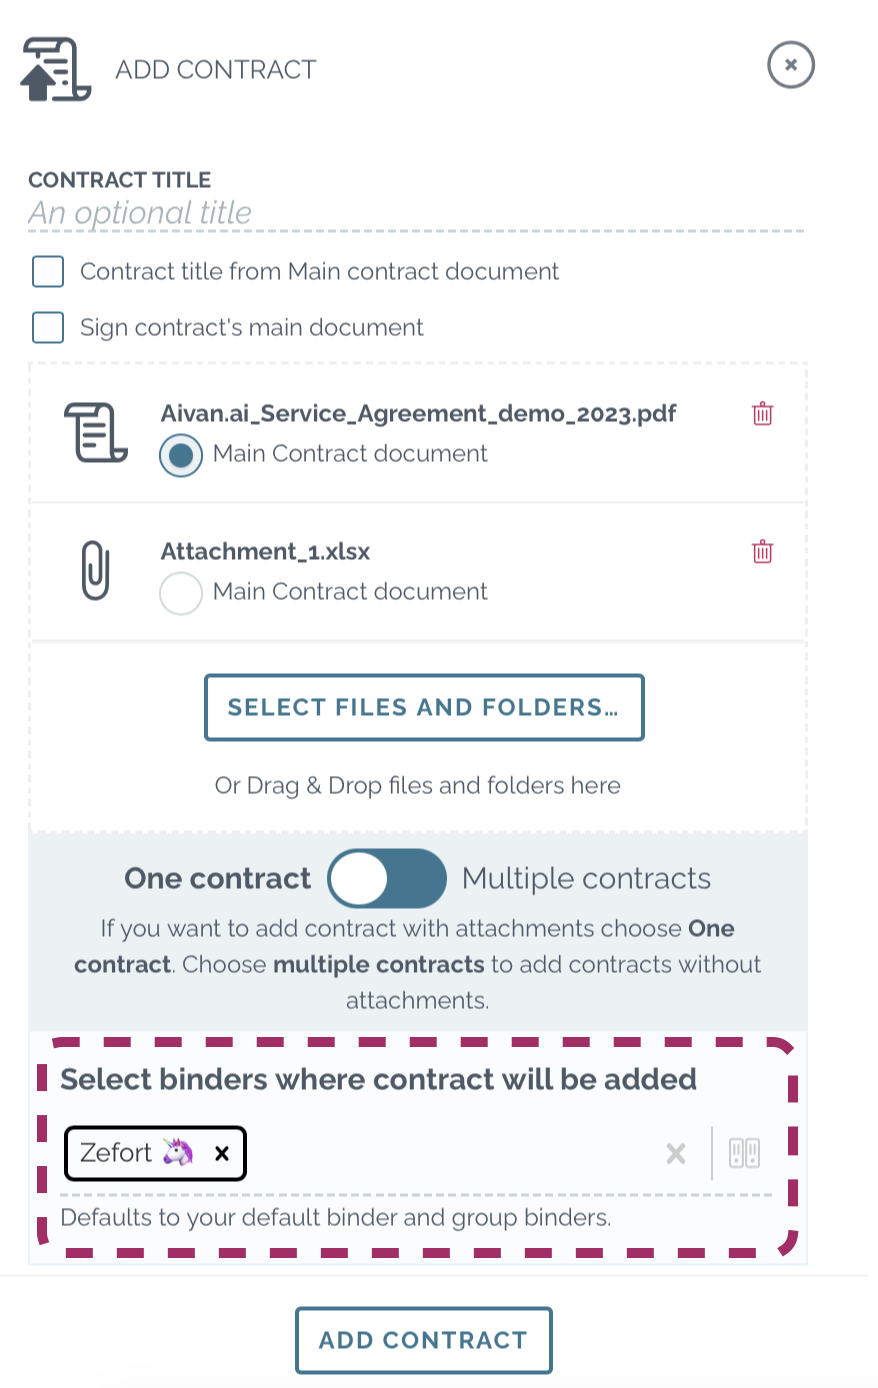 zefort upload contract to default binder